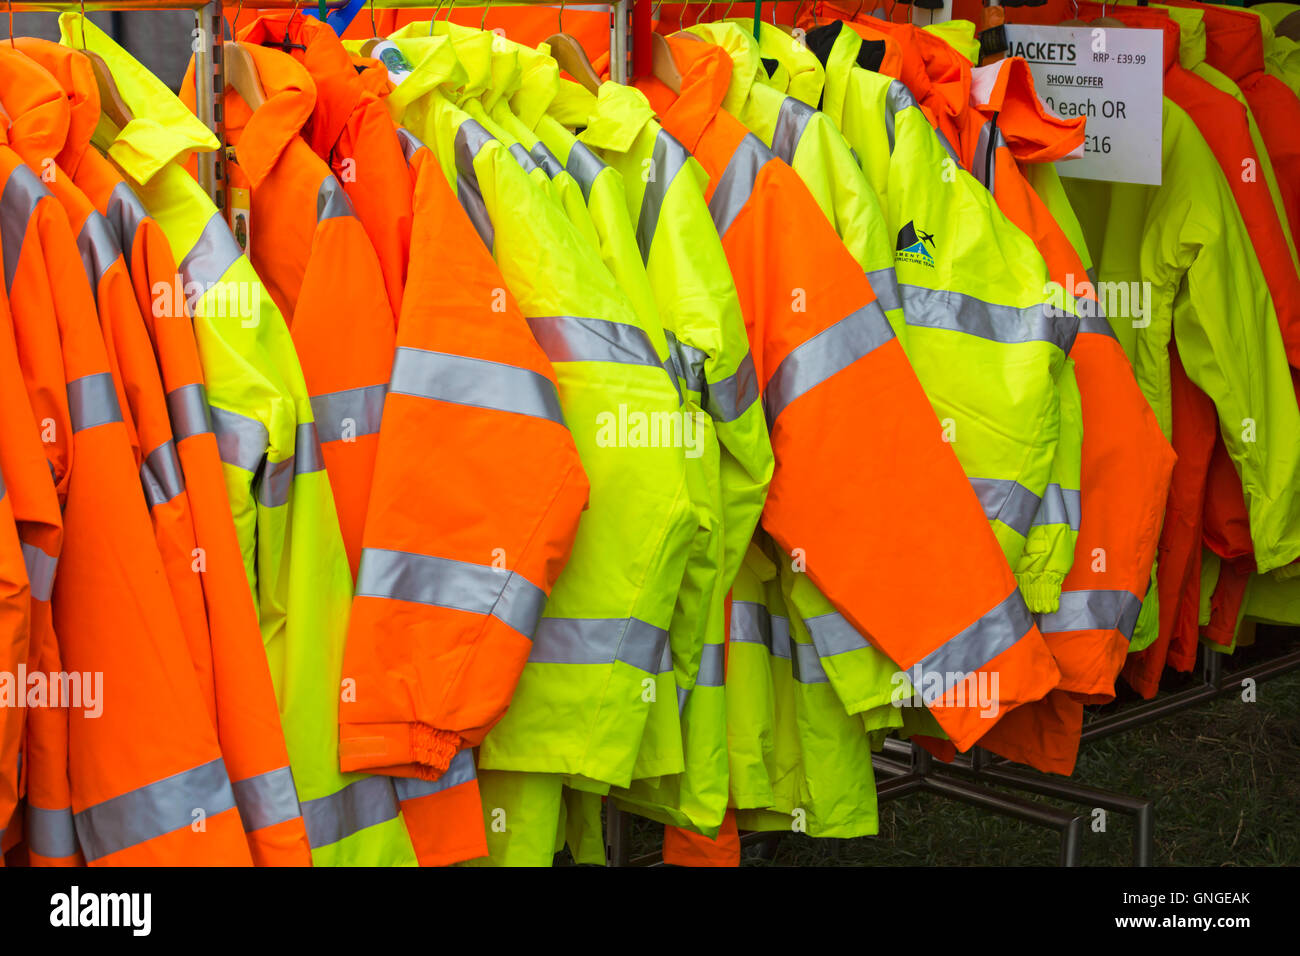 Vestes de haute visibilité à vendre sur le stand à la foire de vapeur de Great Dorset, Tarrant Hinton, Blandford, Dorset Royaume-Uni en août - vêtements de veste haute visibilité Banque D'Images